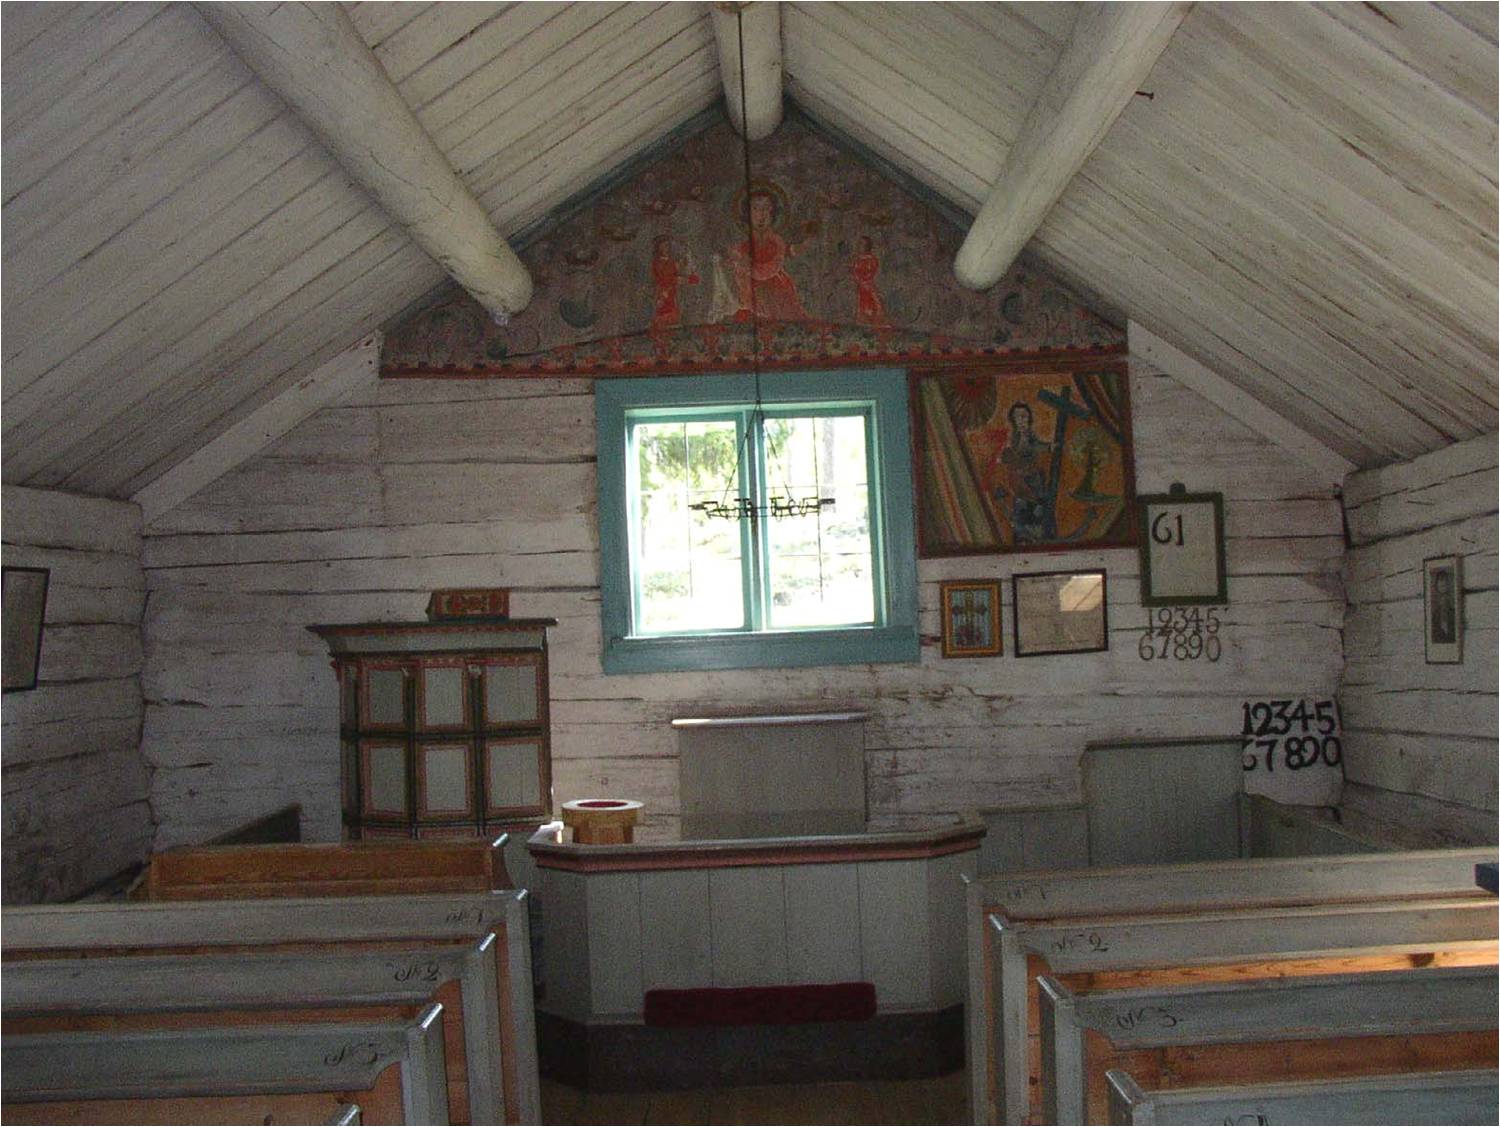 Kapellets interiör från väster.